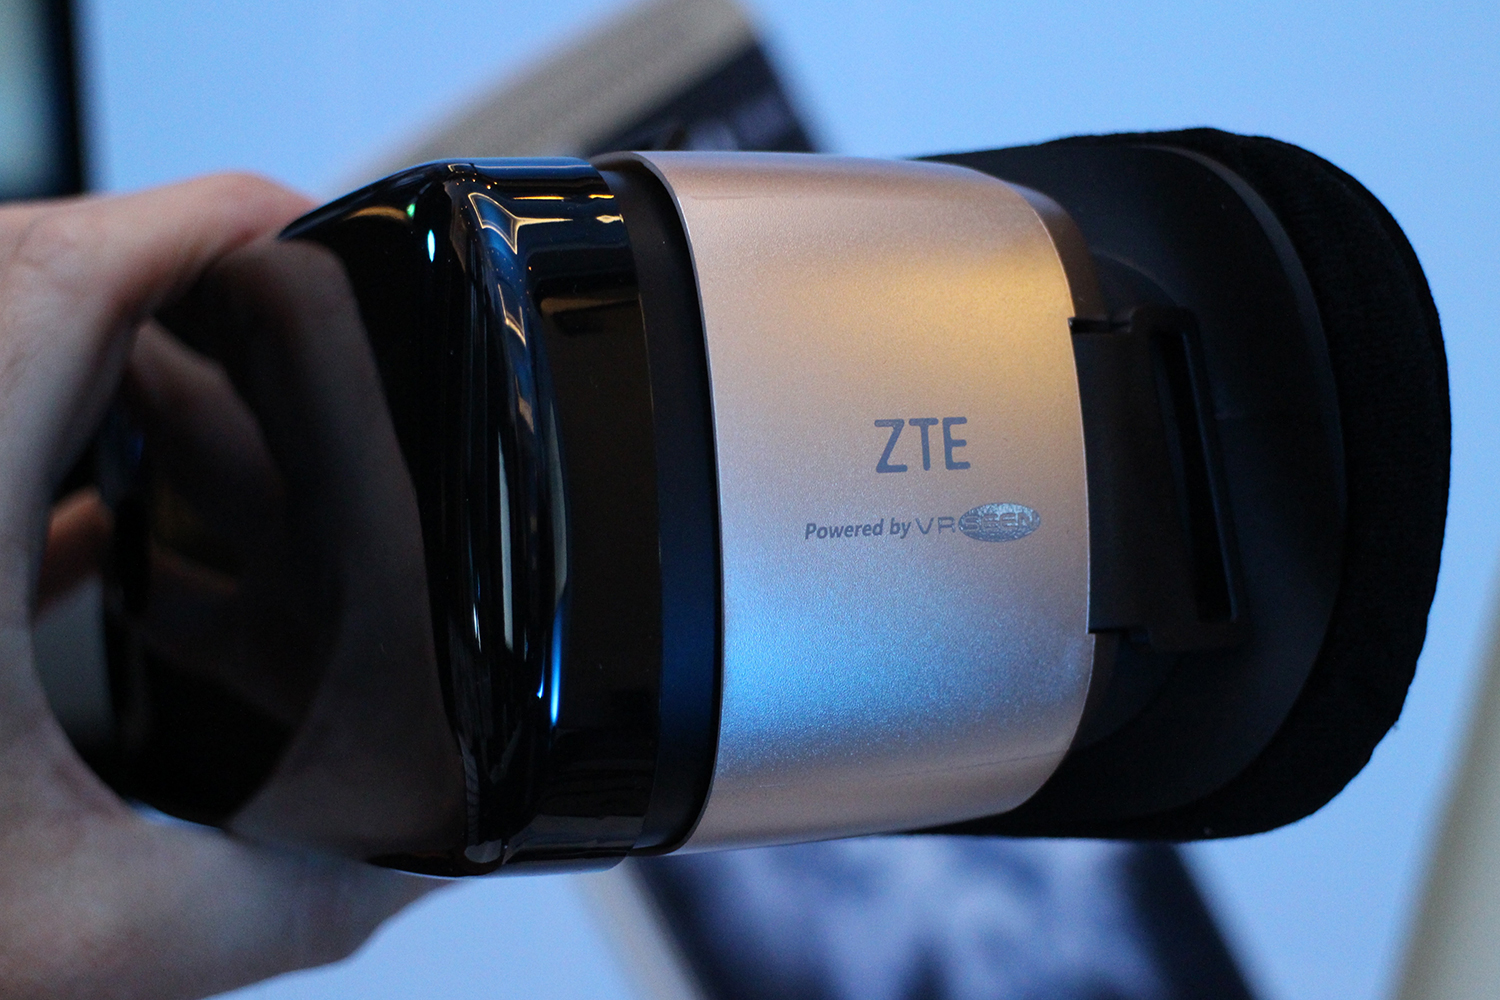 ZTE VR headset